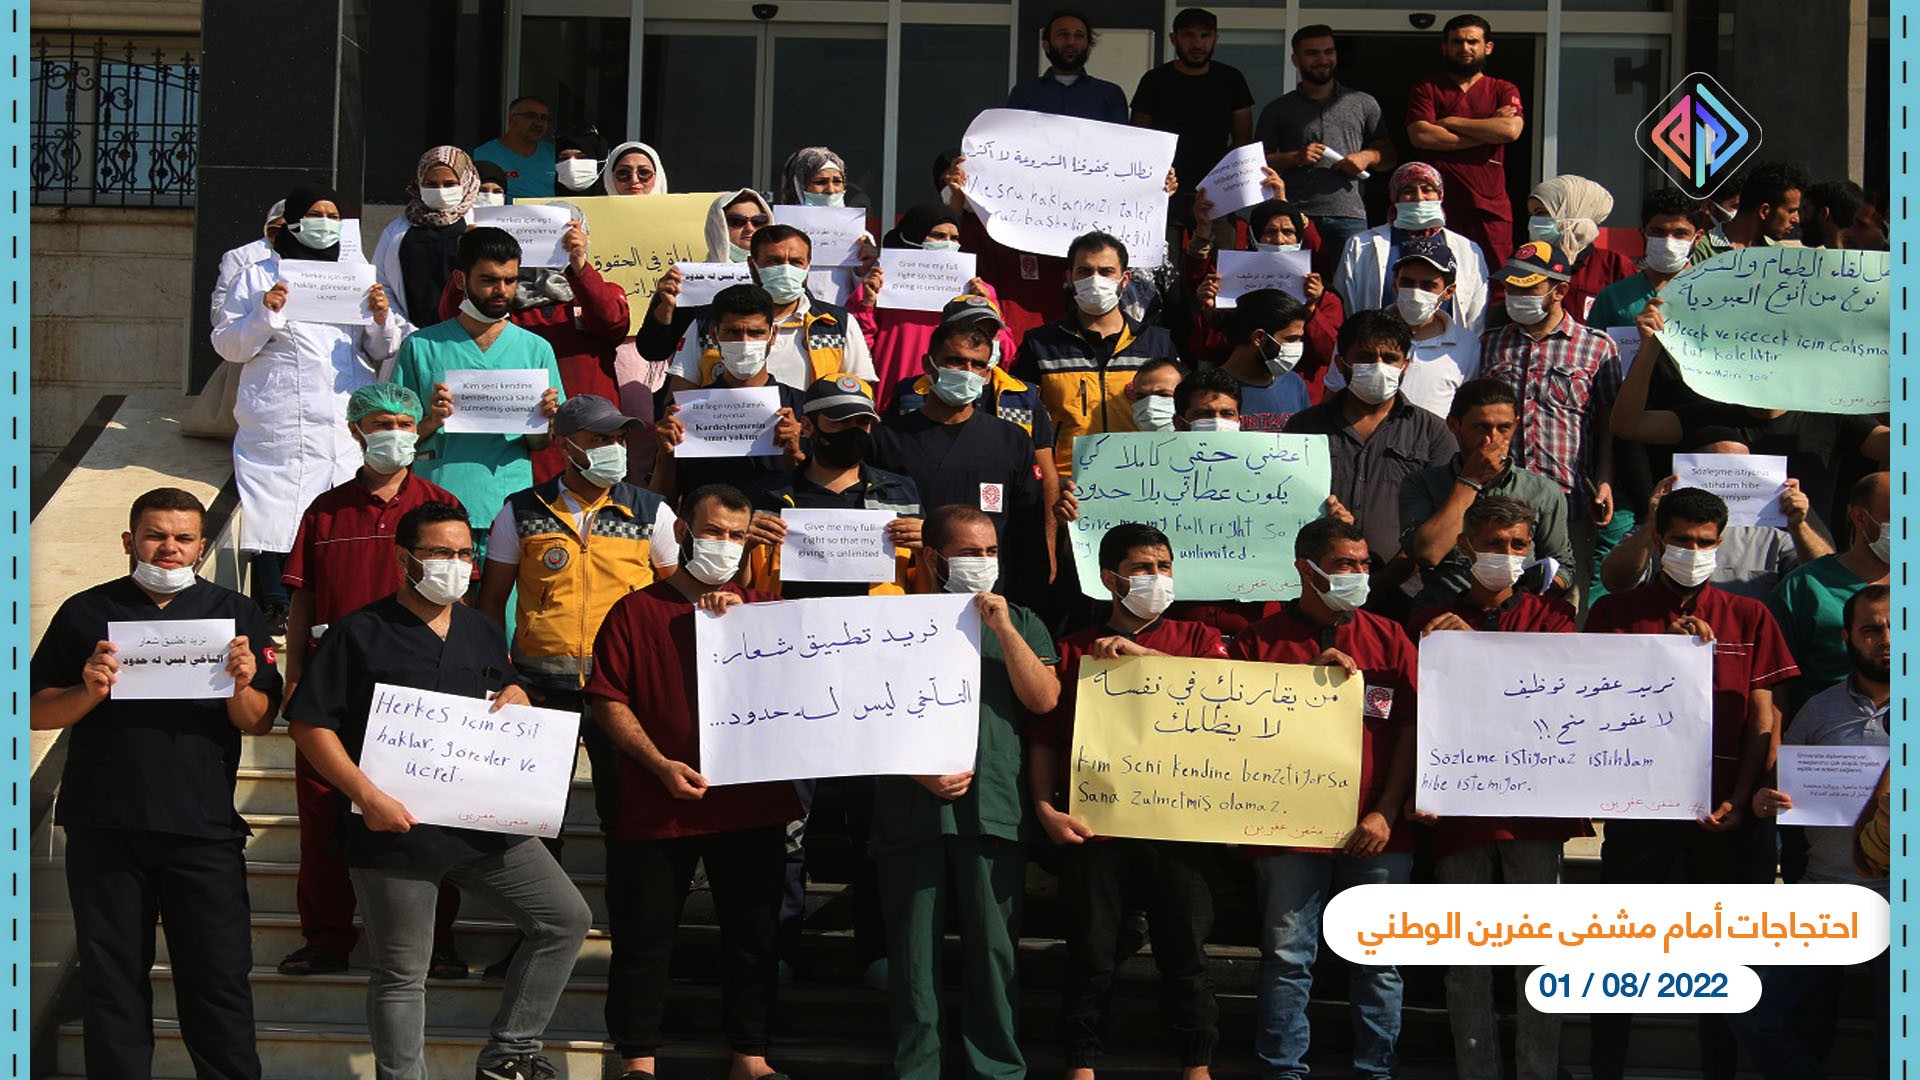 احتجاجات أمام مشفى عفرين الوطني عدسة أمين العلي آرام 1.jpg